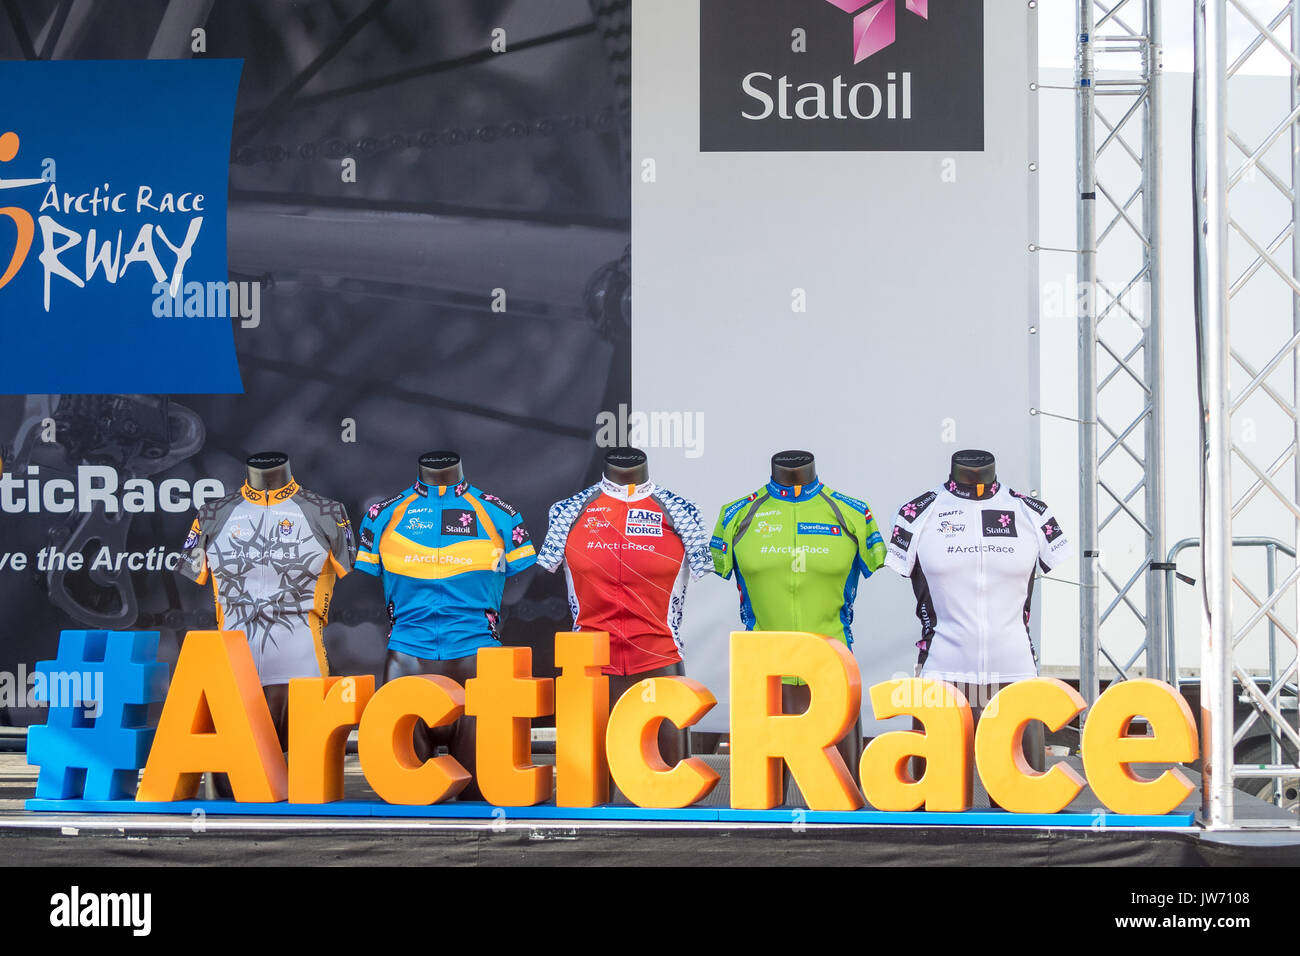 Foto von der jährlichen Arktische Rasse von keineswegs abträgig. Ein Radfahren Wettbewerb über 4 Tage im nördlichen Teil von Norwegen. Radfahrer aus der ganzen Welt in Pro, Continental und Amateur Mannschaften konkurrieren jedes Jahr. Stockfoto